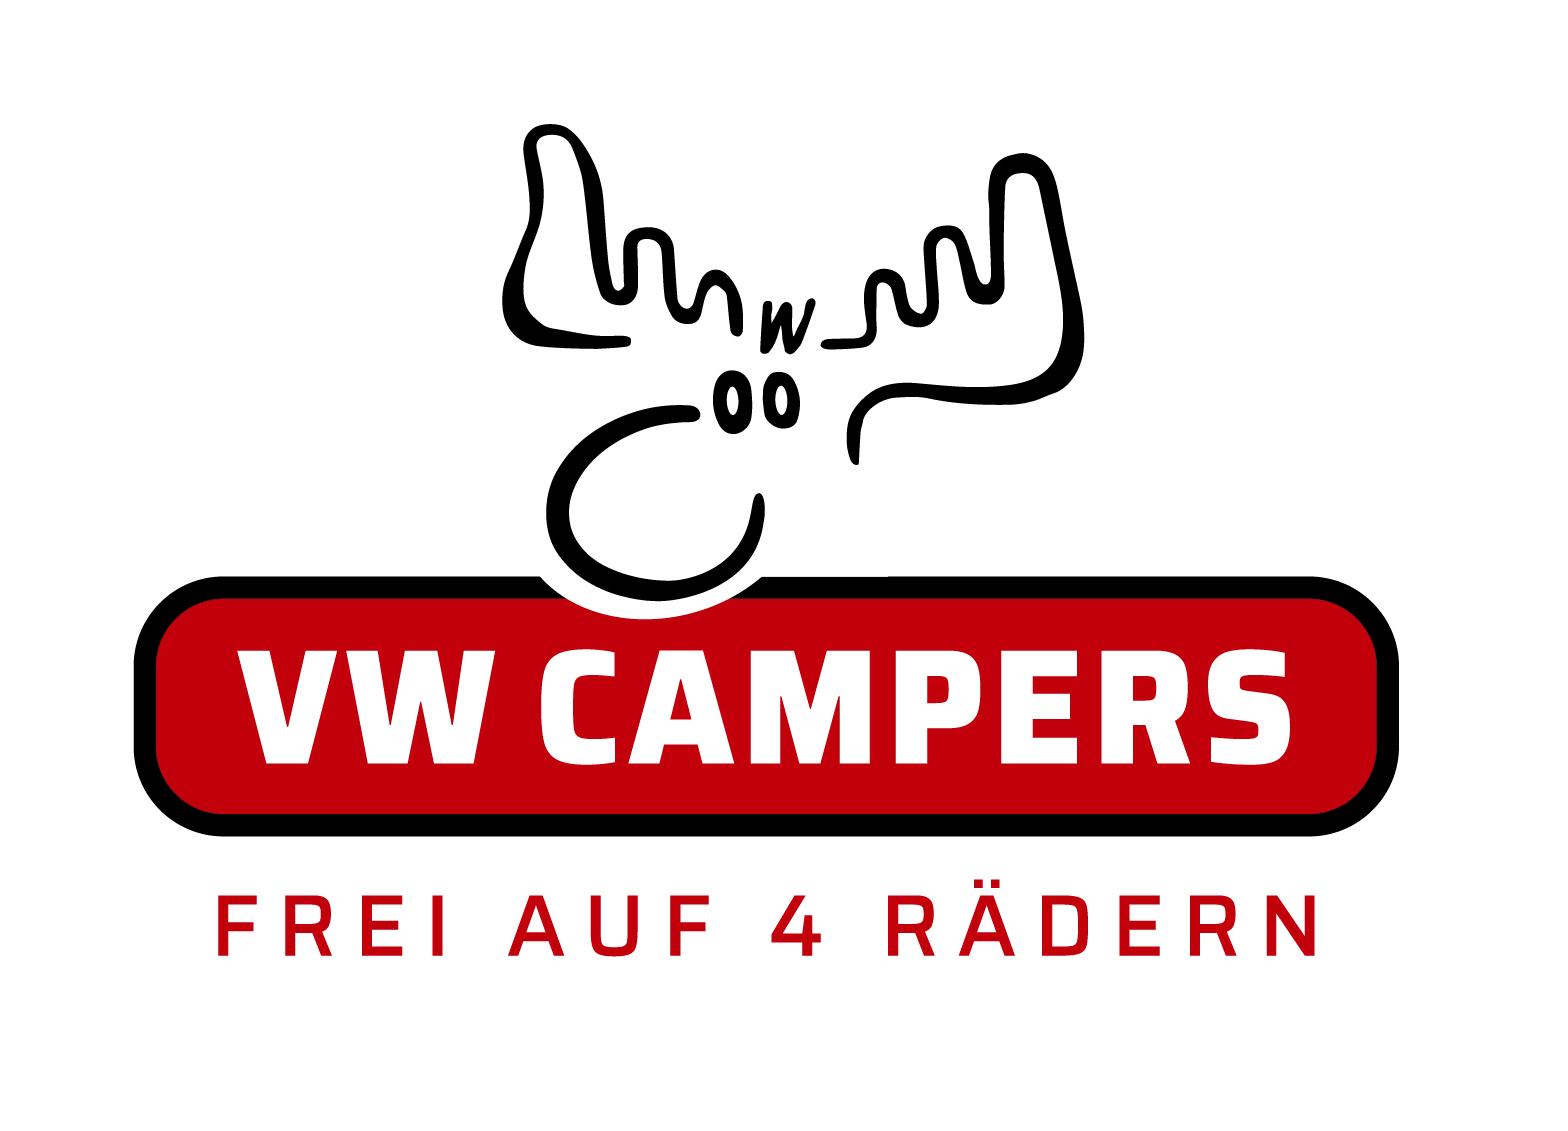 maxxcamp-vermietung-vw-campers.jpg